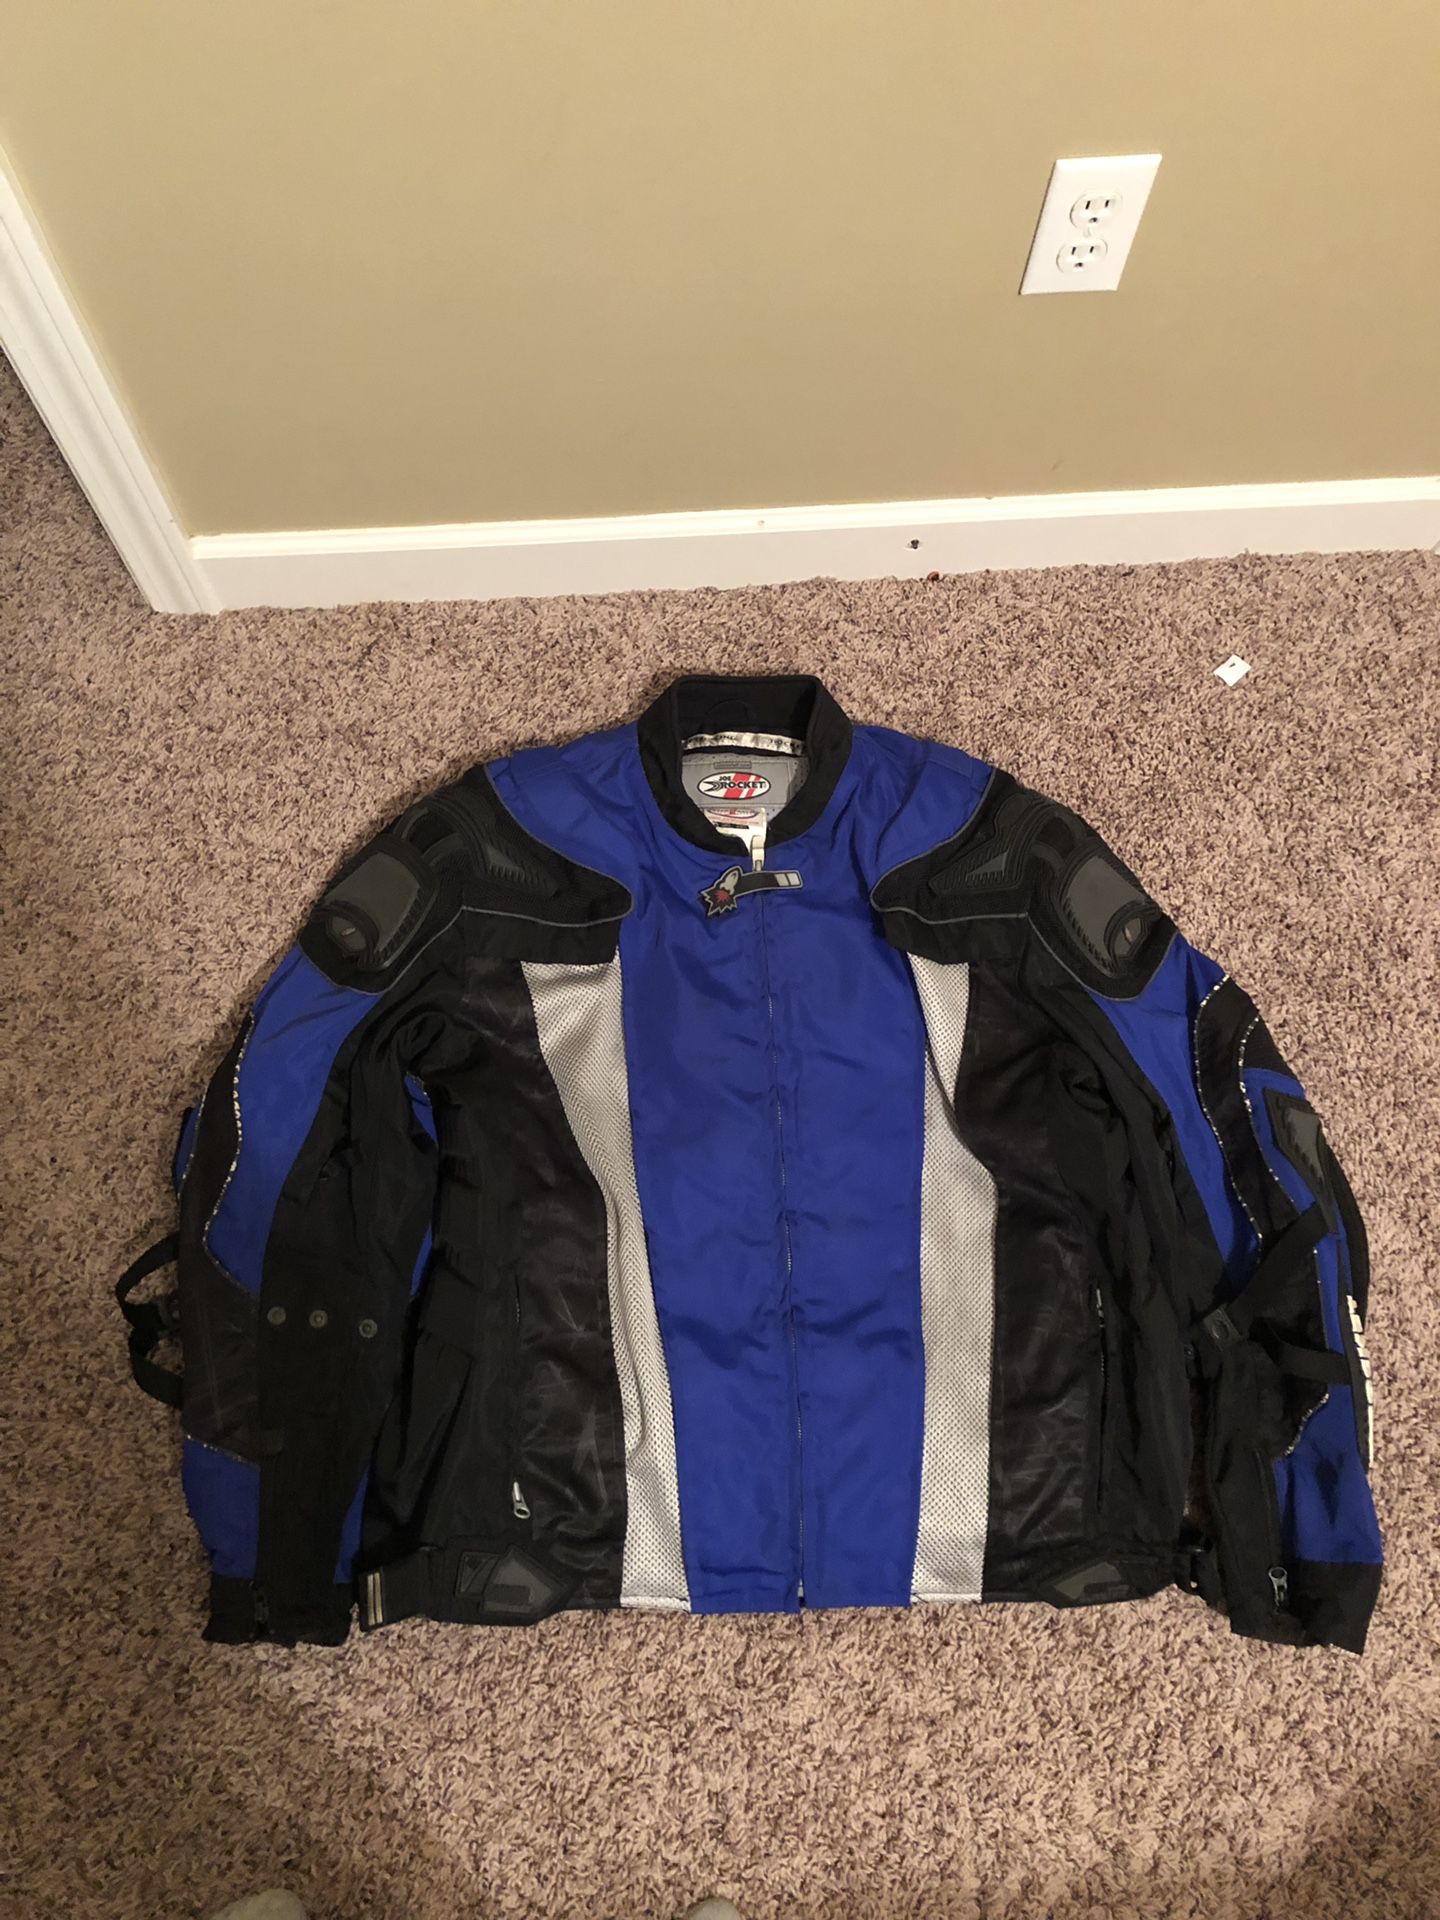 Motorcycle jacket XXL......Joe rocket jacket... 2xl blue/black